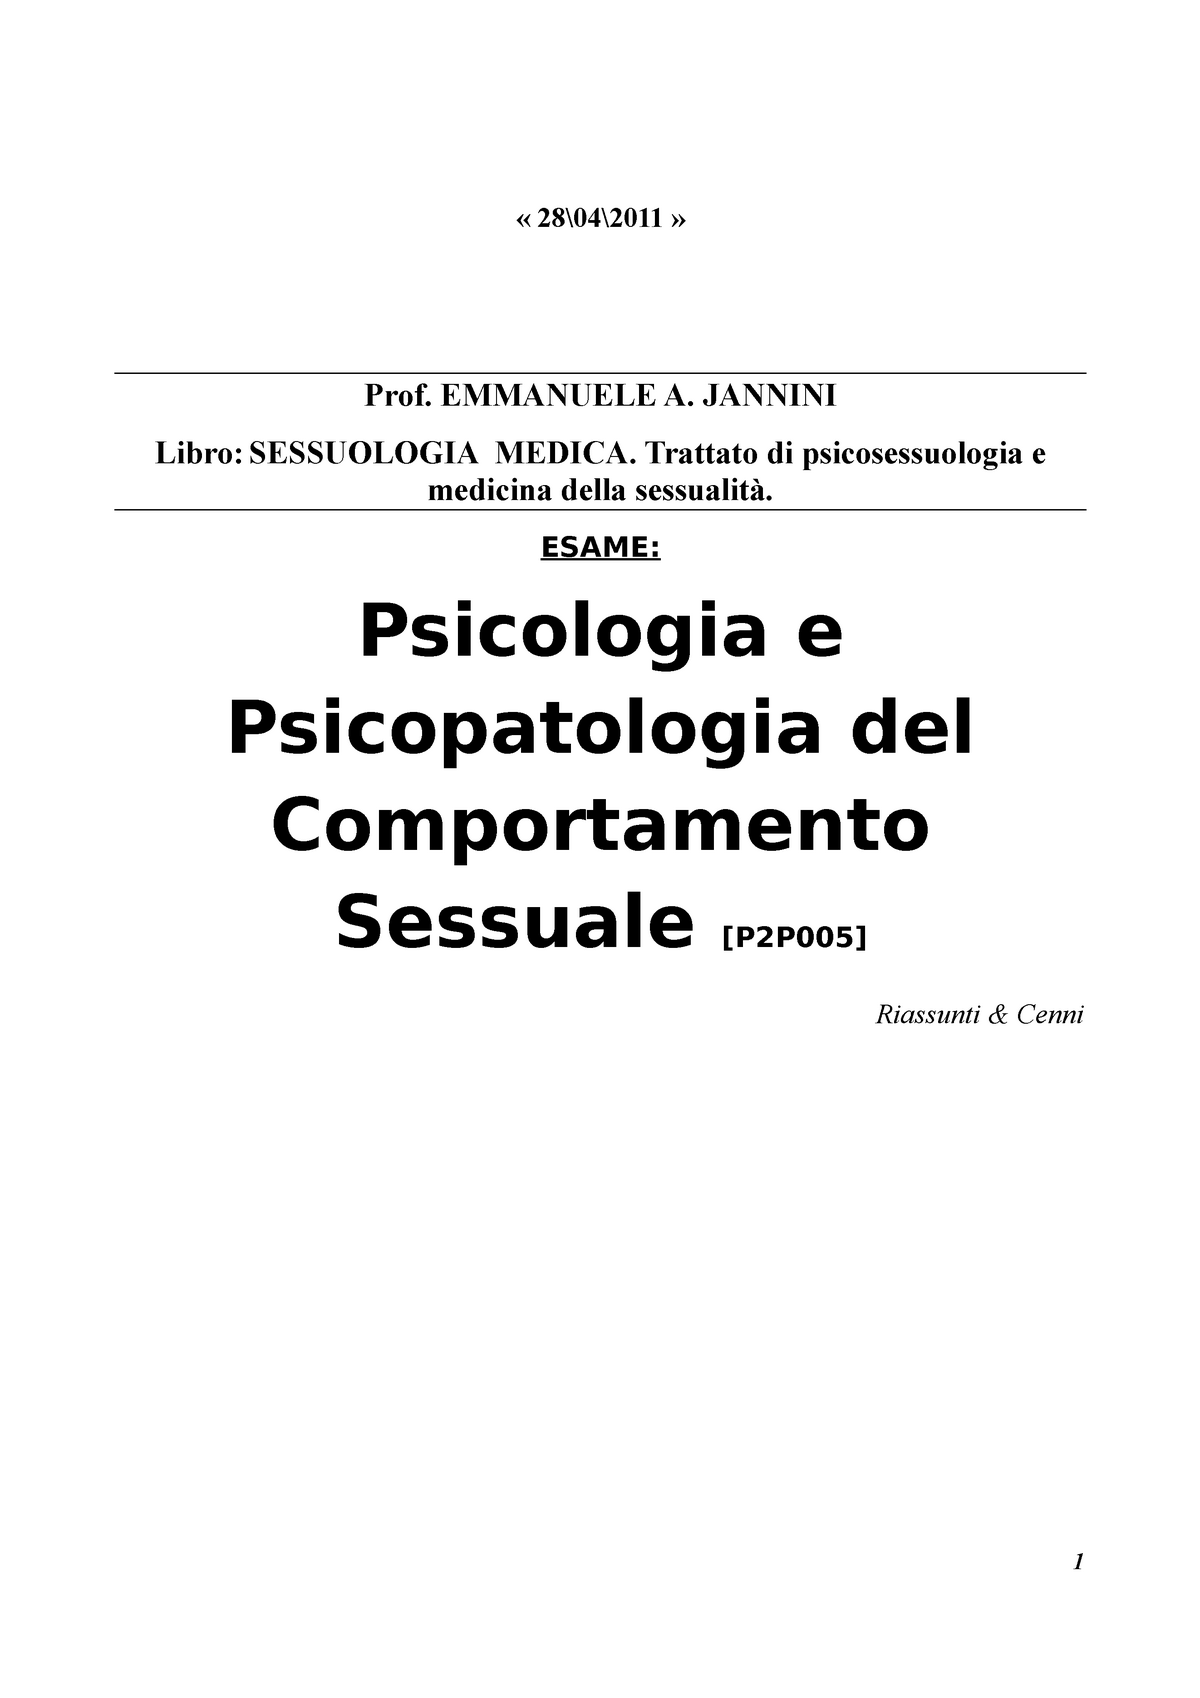 E. A. Jannini - Sessuologia medica - Prof. EMMANUELE A. JANNINI Libro:  SESSUOLOGIA MEDICA. Trattato - Studocu